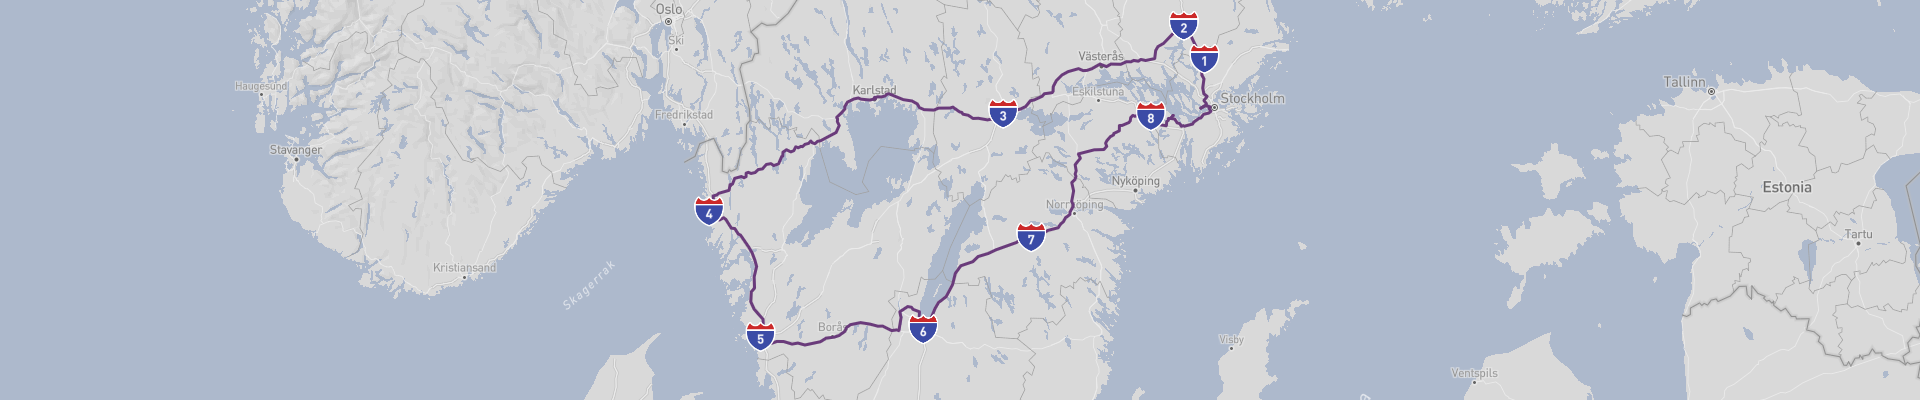 Itinéraire Central Sweden 